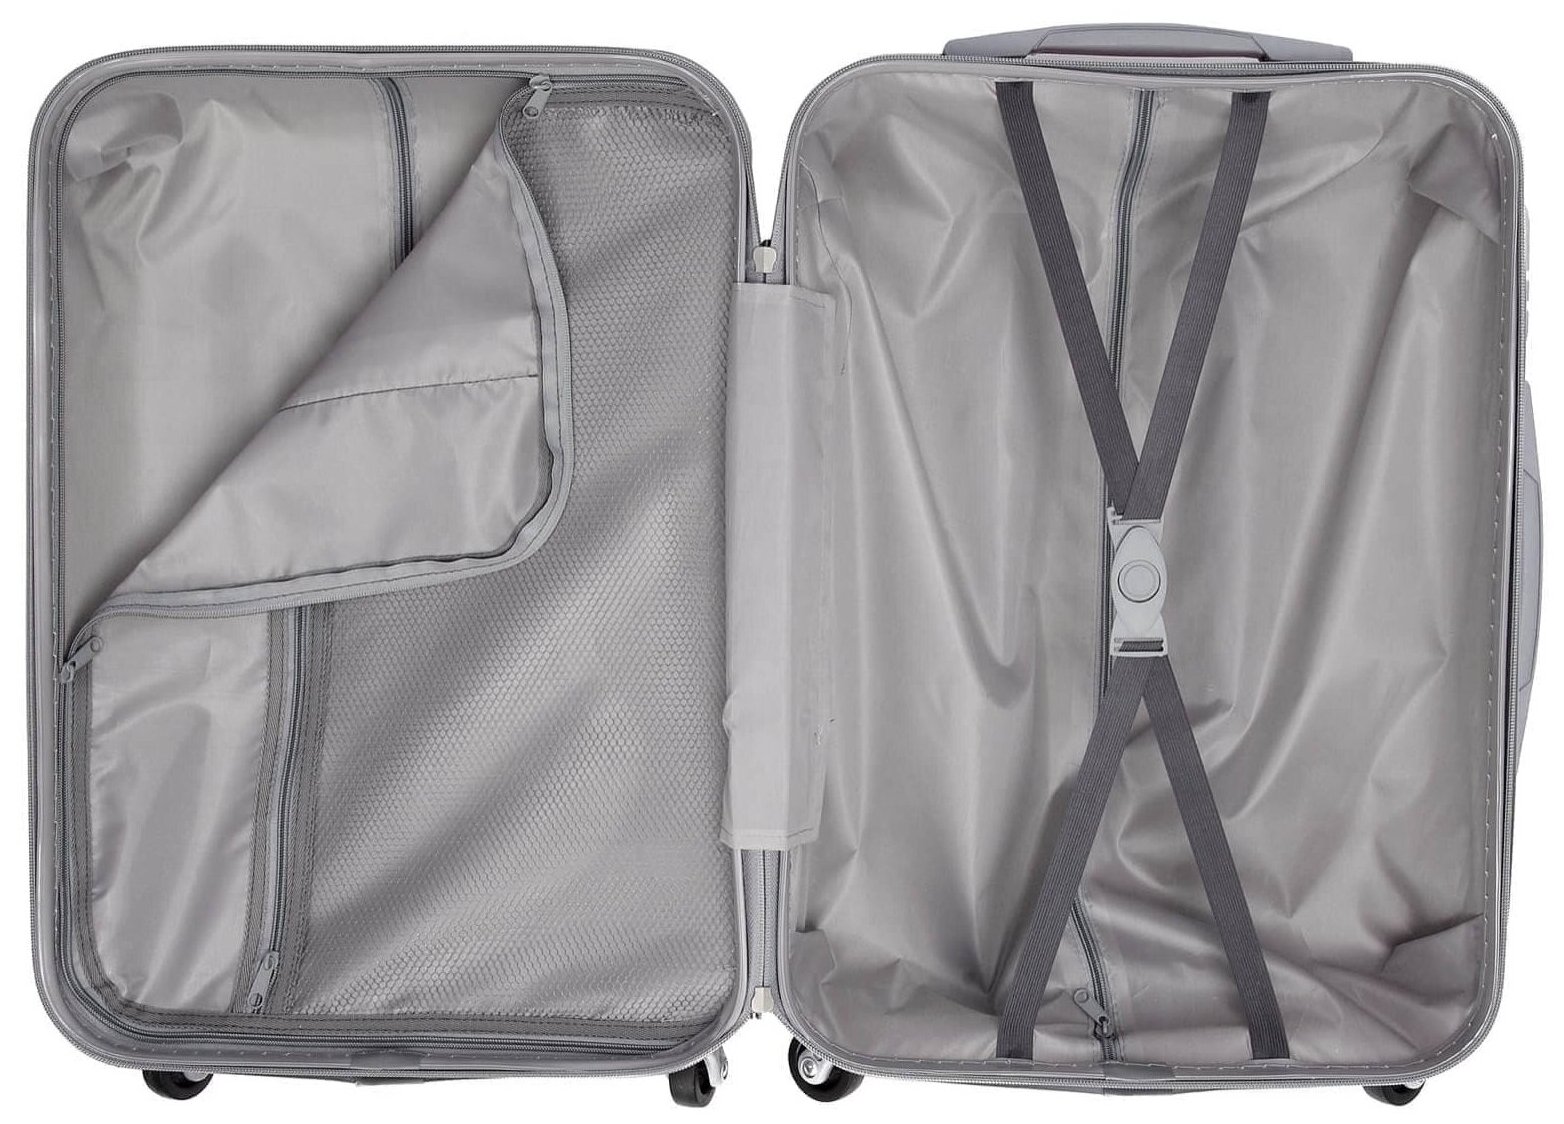 Чемоданы Swissbrand Чемодан на колесах дорожный средний багаж на двоих для путешествий мужской m+ Тевин размер М+ 68 см 77 л легкий 3.7 кг прочный поликарбонат Коричневый